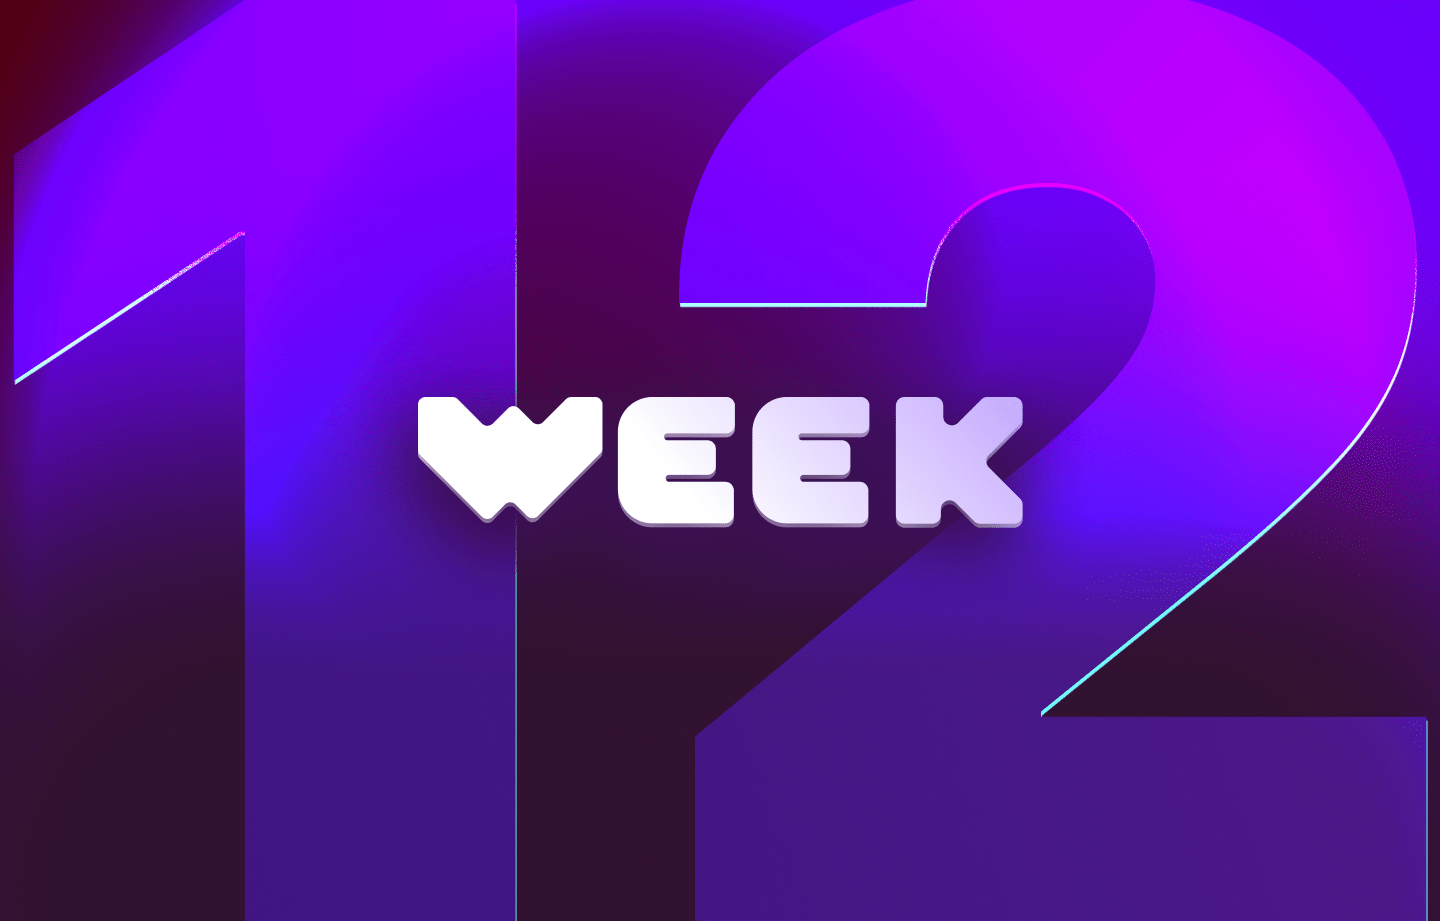 This week in web3 #12